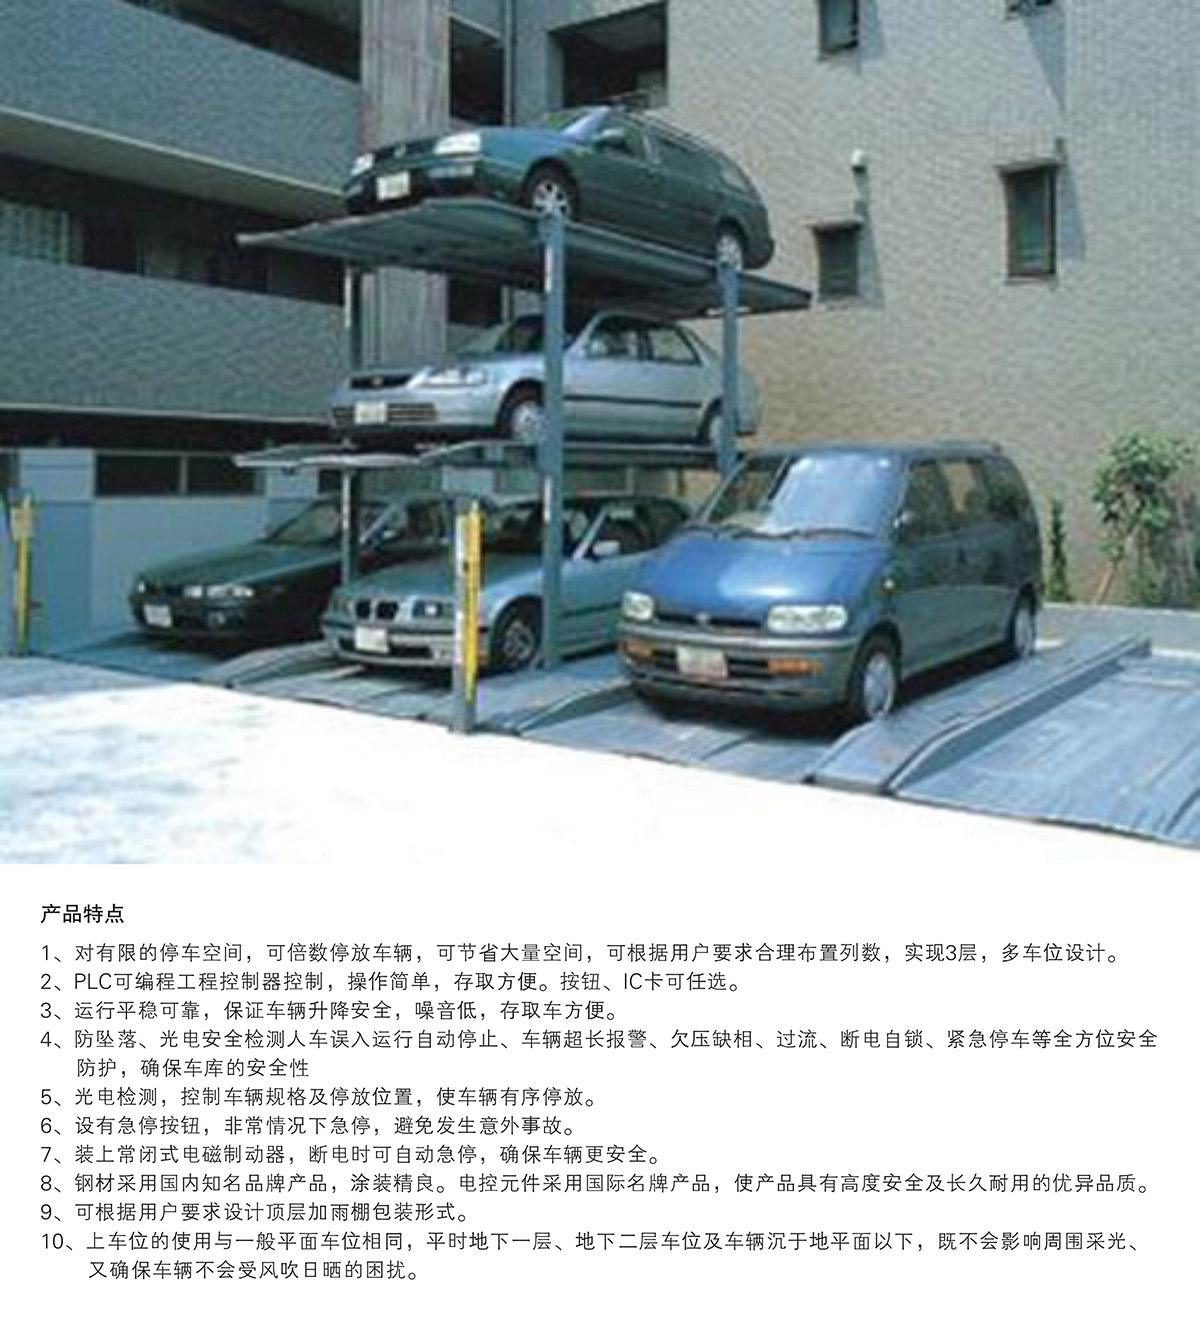 贵阳PJS3-D2三层地坑简易升降立体车库设备产品特点.jpg